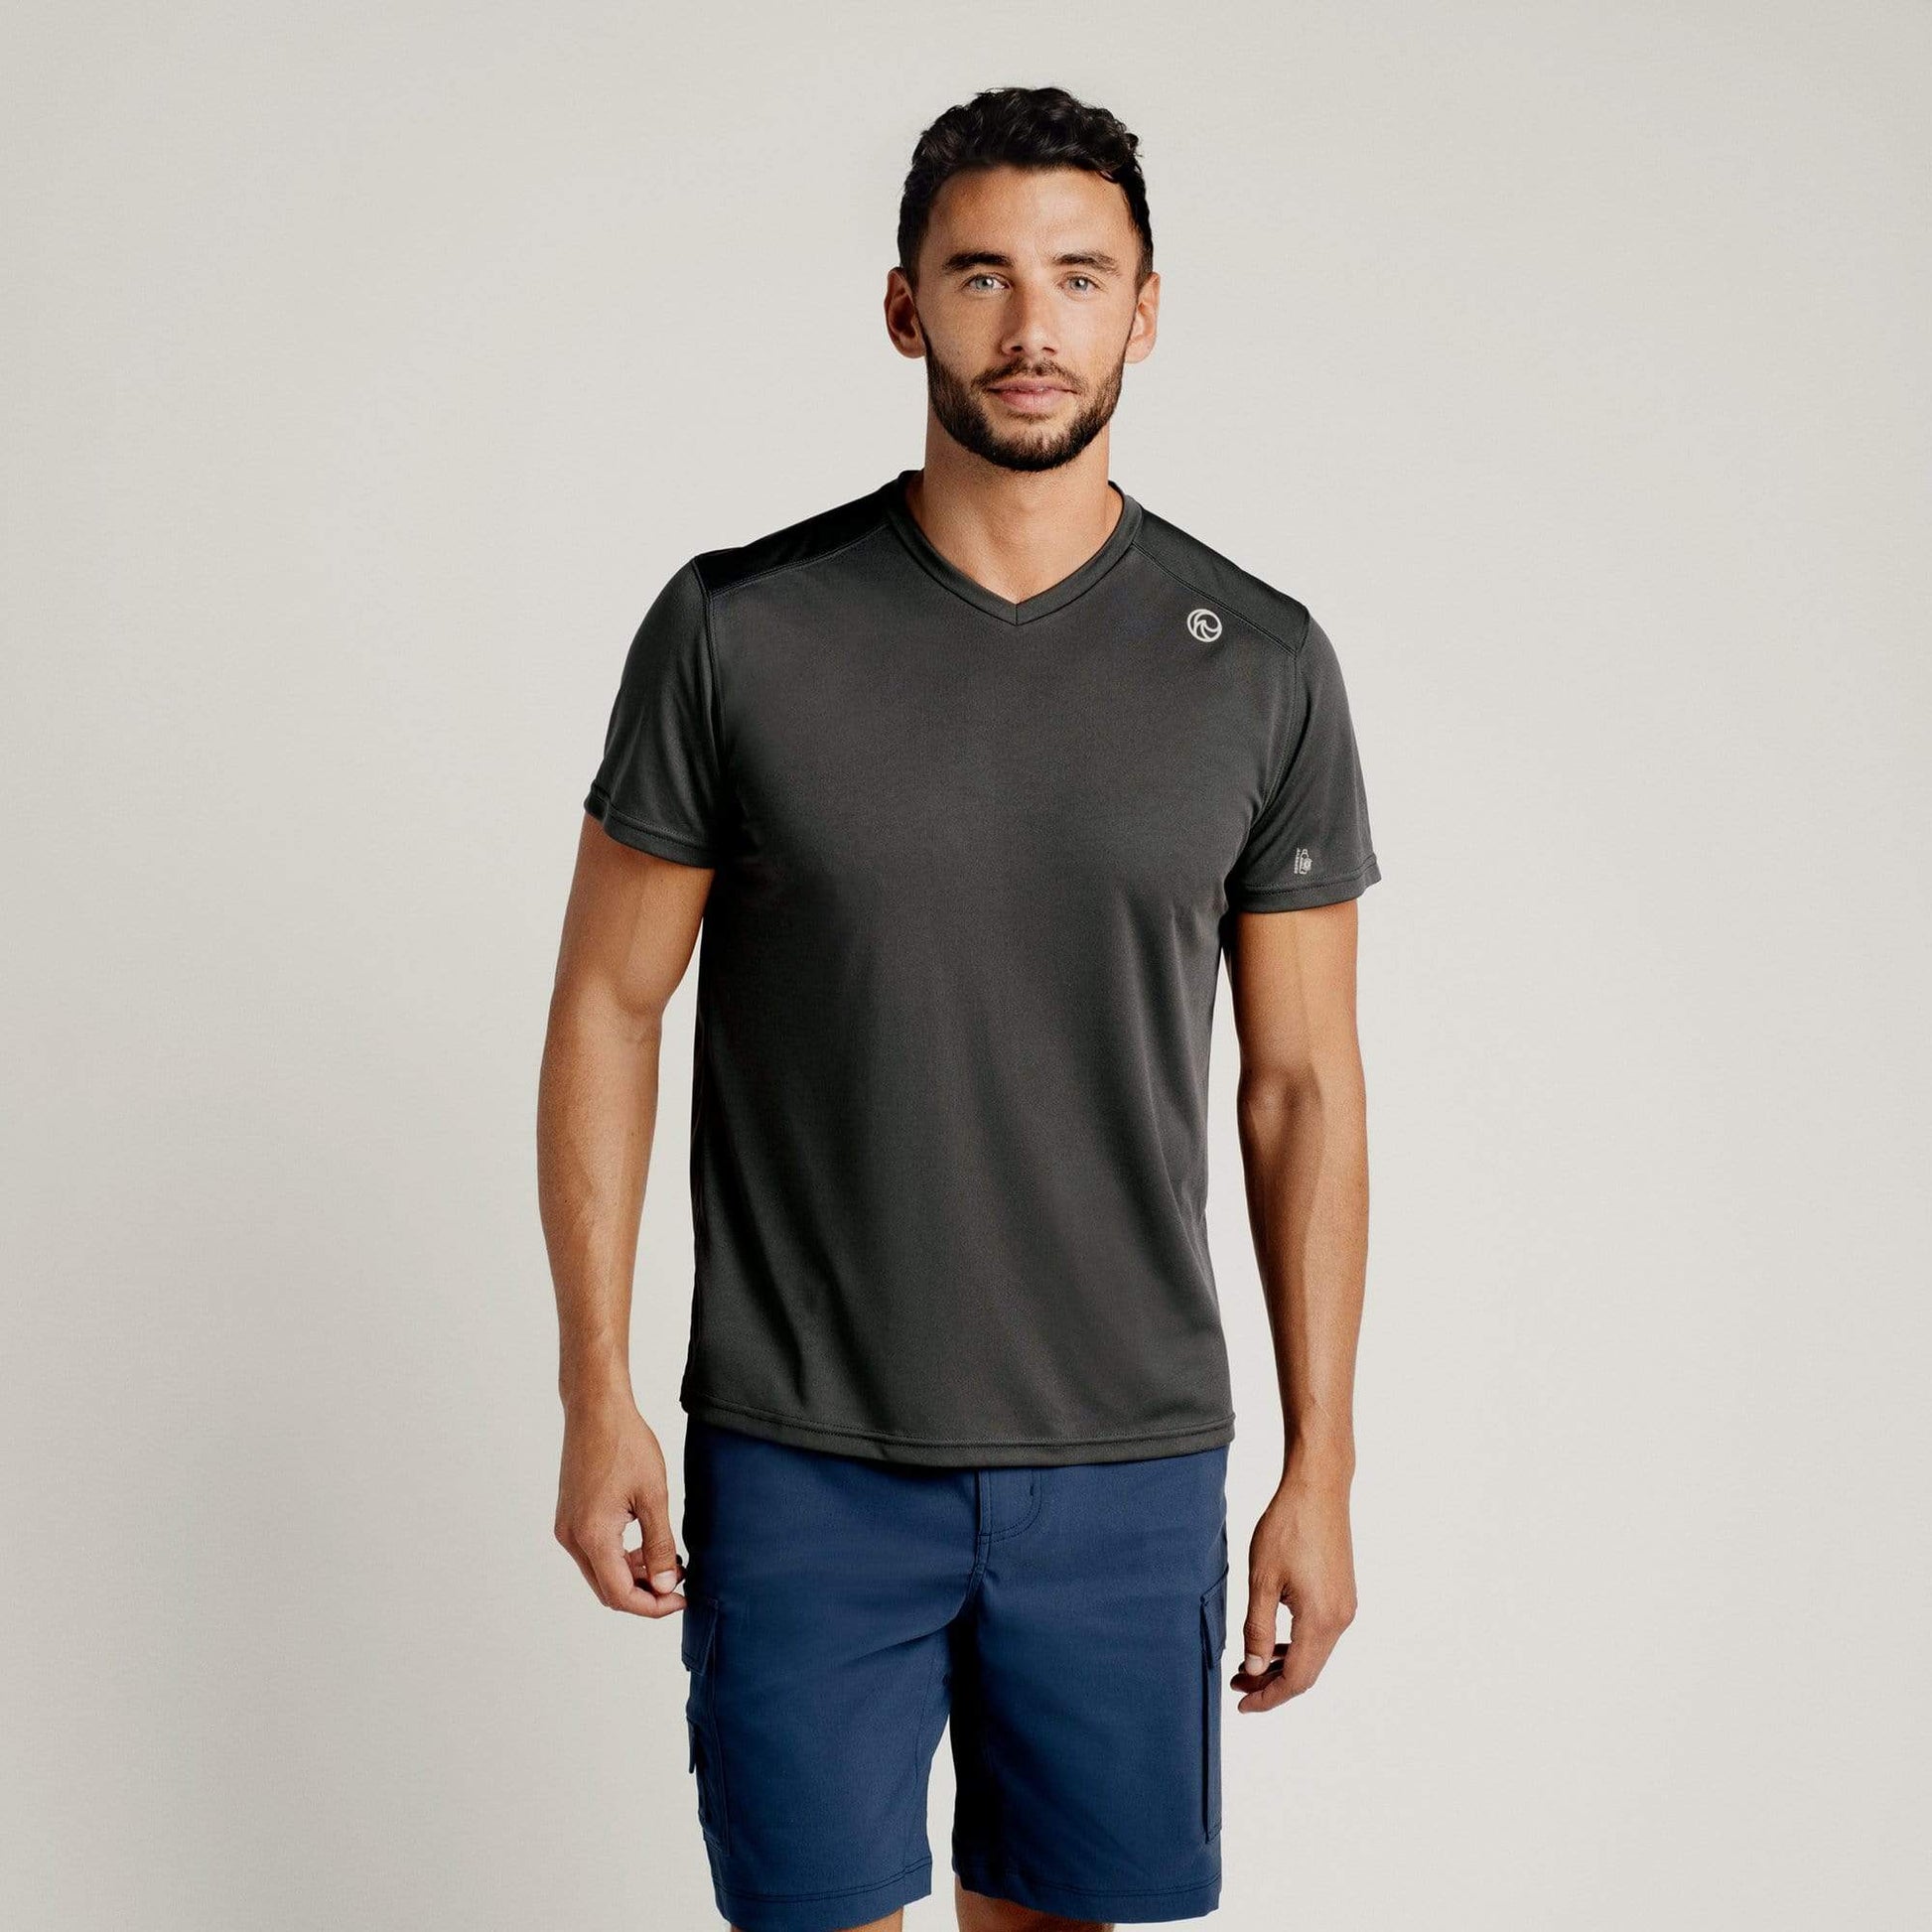 Short Sleeve Workout Shirts | Sustainable Men's Clothing